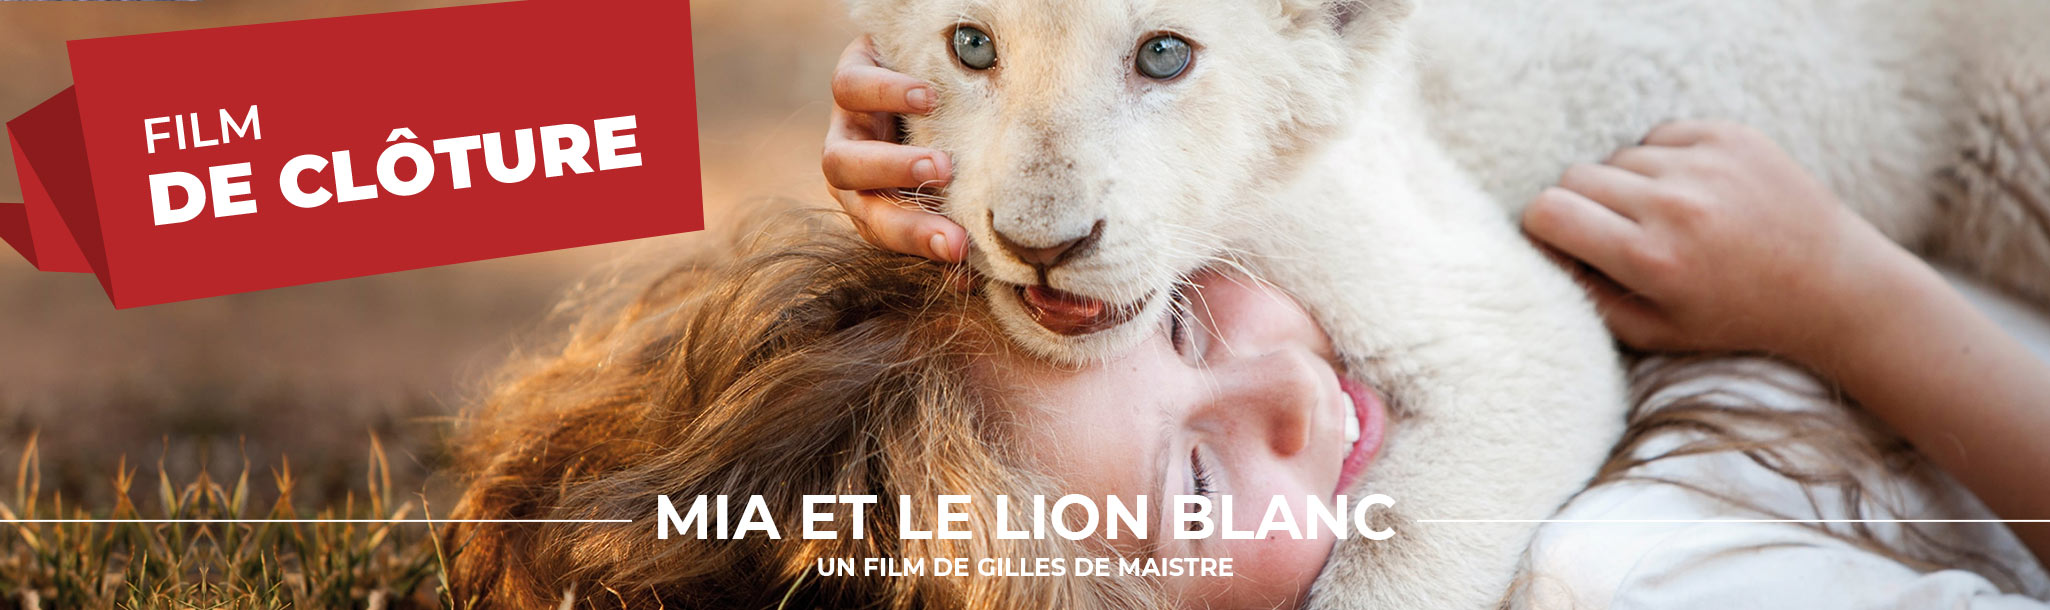 Film de clôture - Mia et le lion blanc